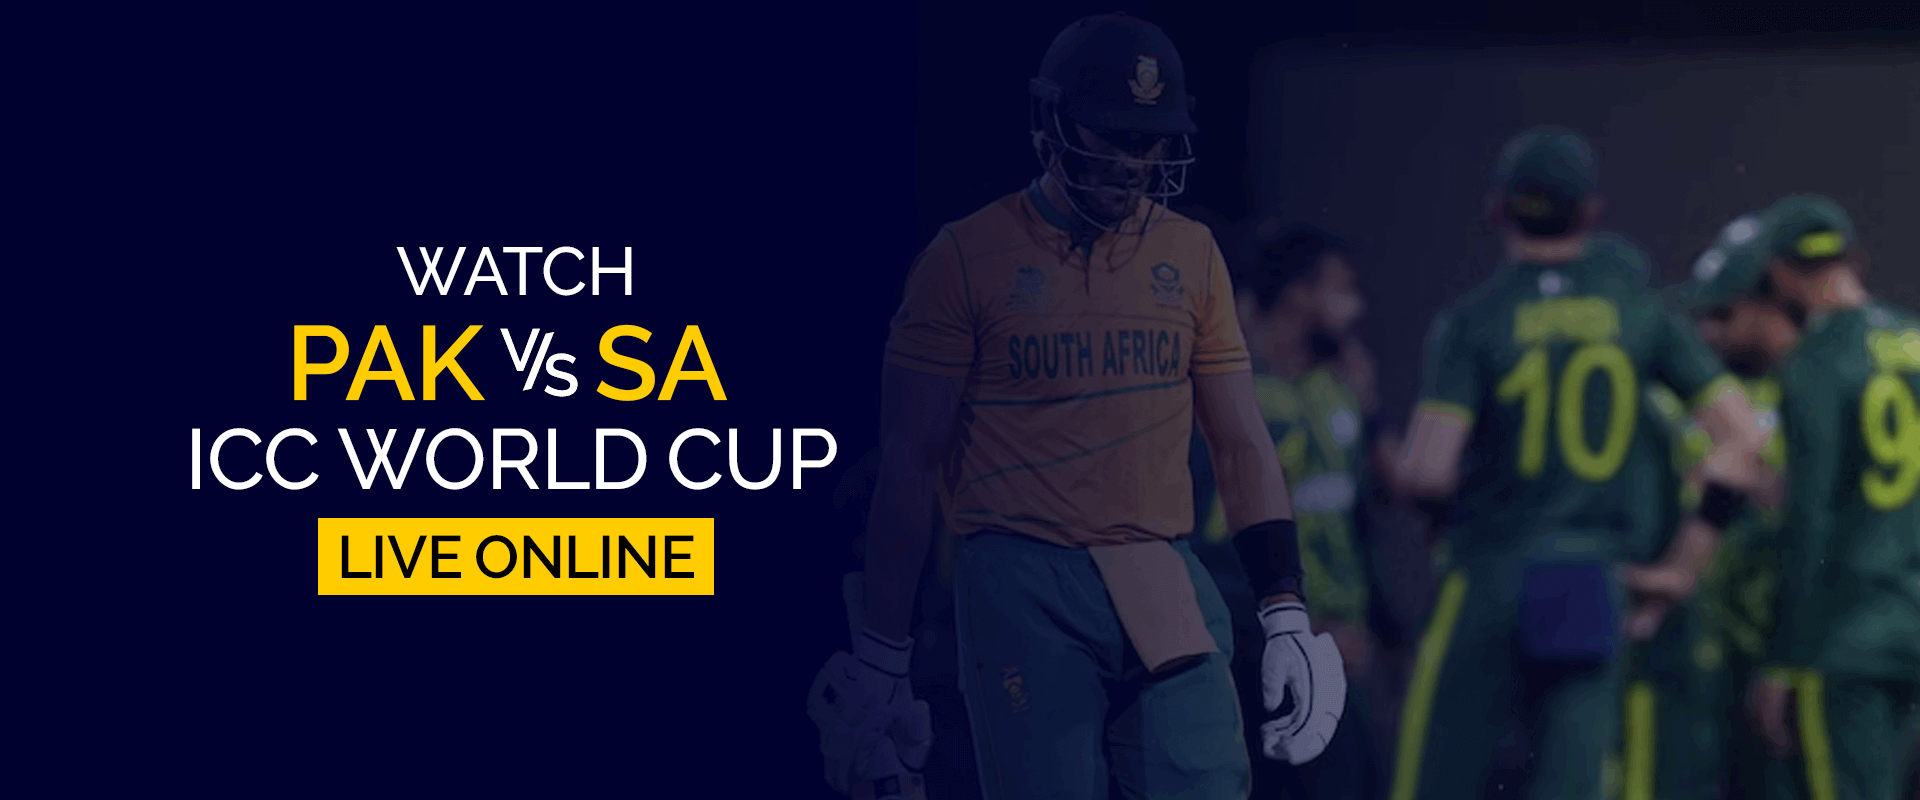 Смотрите матч чемпионата мира ICC Пакистан против Южной Африки в прямом эфире онлайн